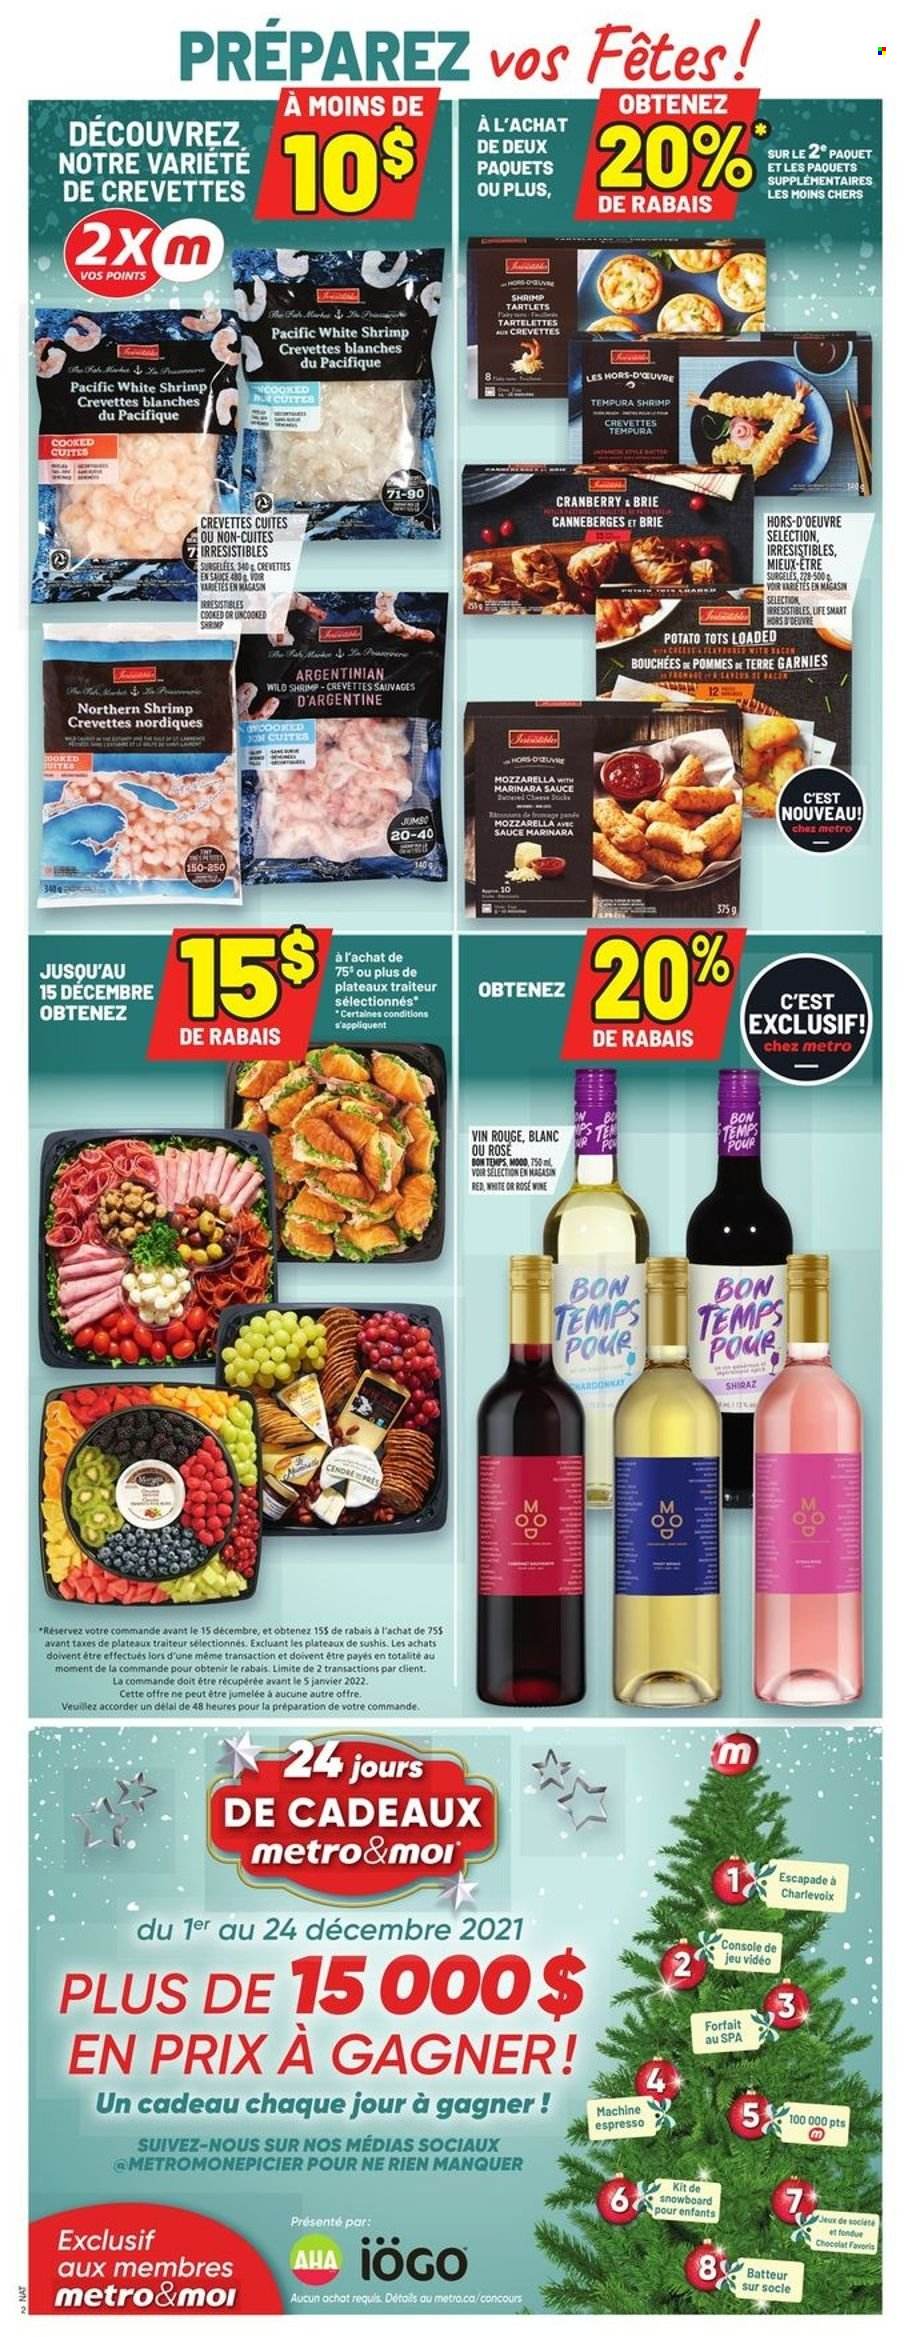 thumbnail - Metro Flyer - December 02, 2021 - December 08, 2021 - Sales products - shrimps, sauce, brie, Shiraz, rosé wine, rose, mozzarella. Page 2.